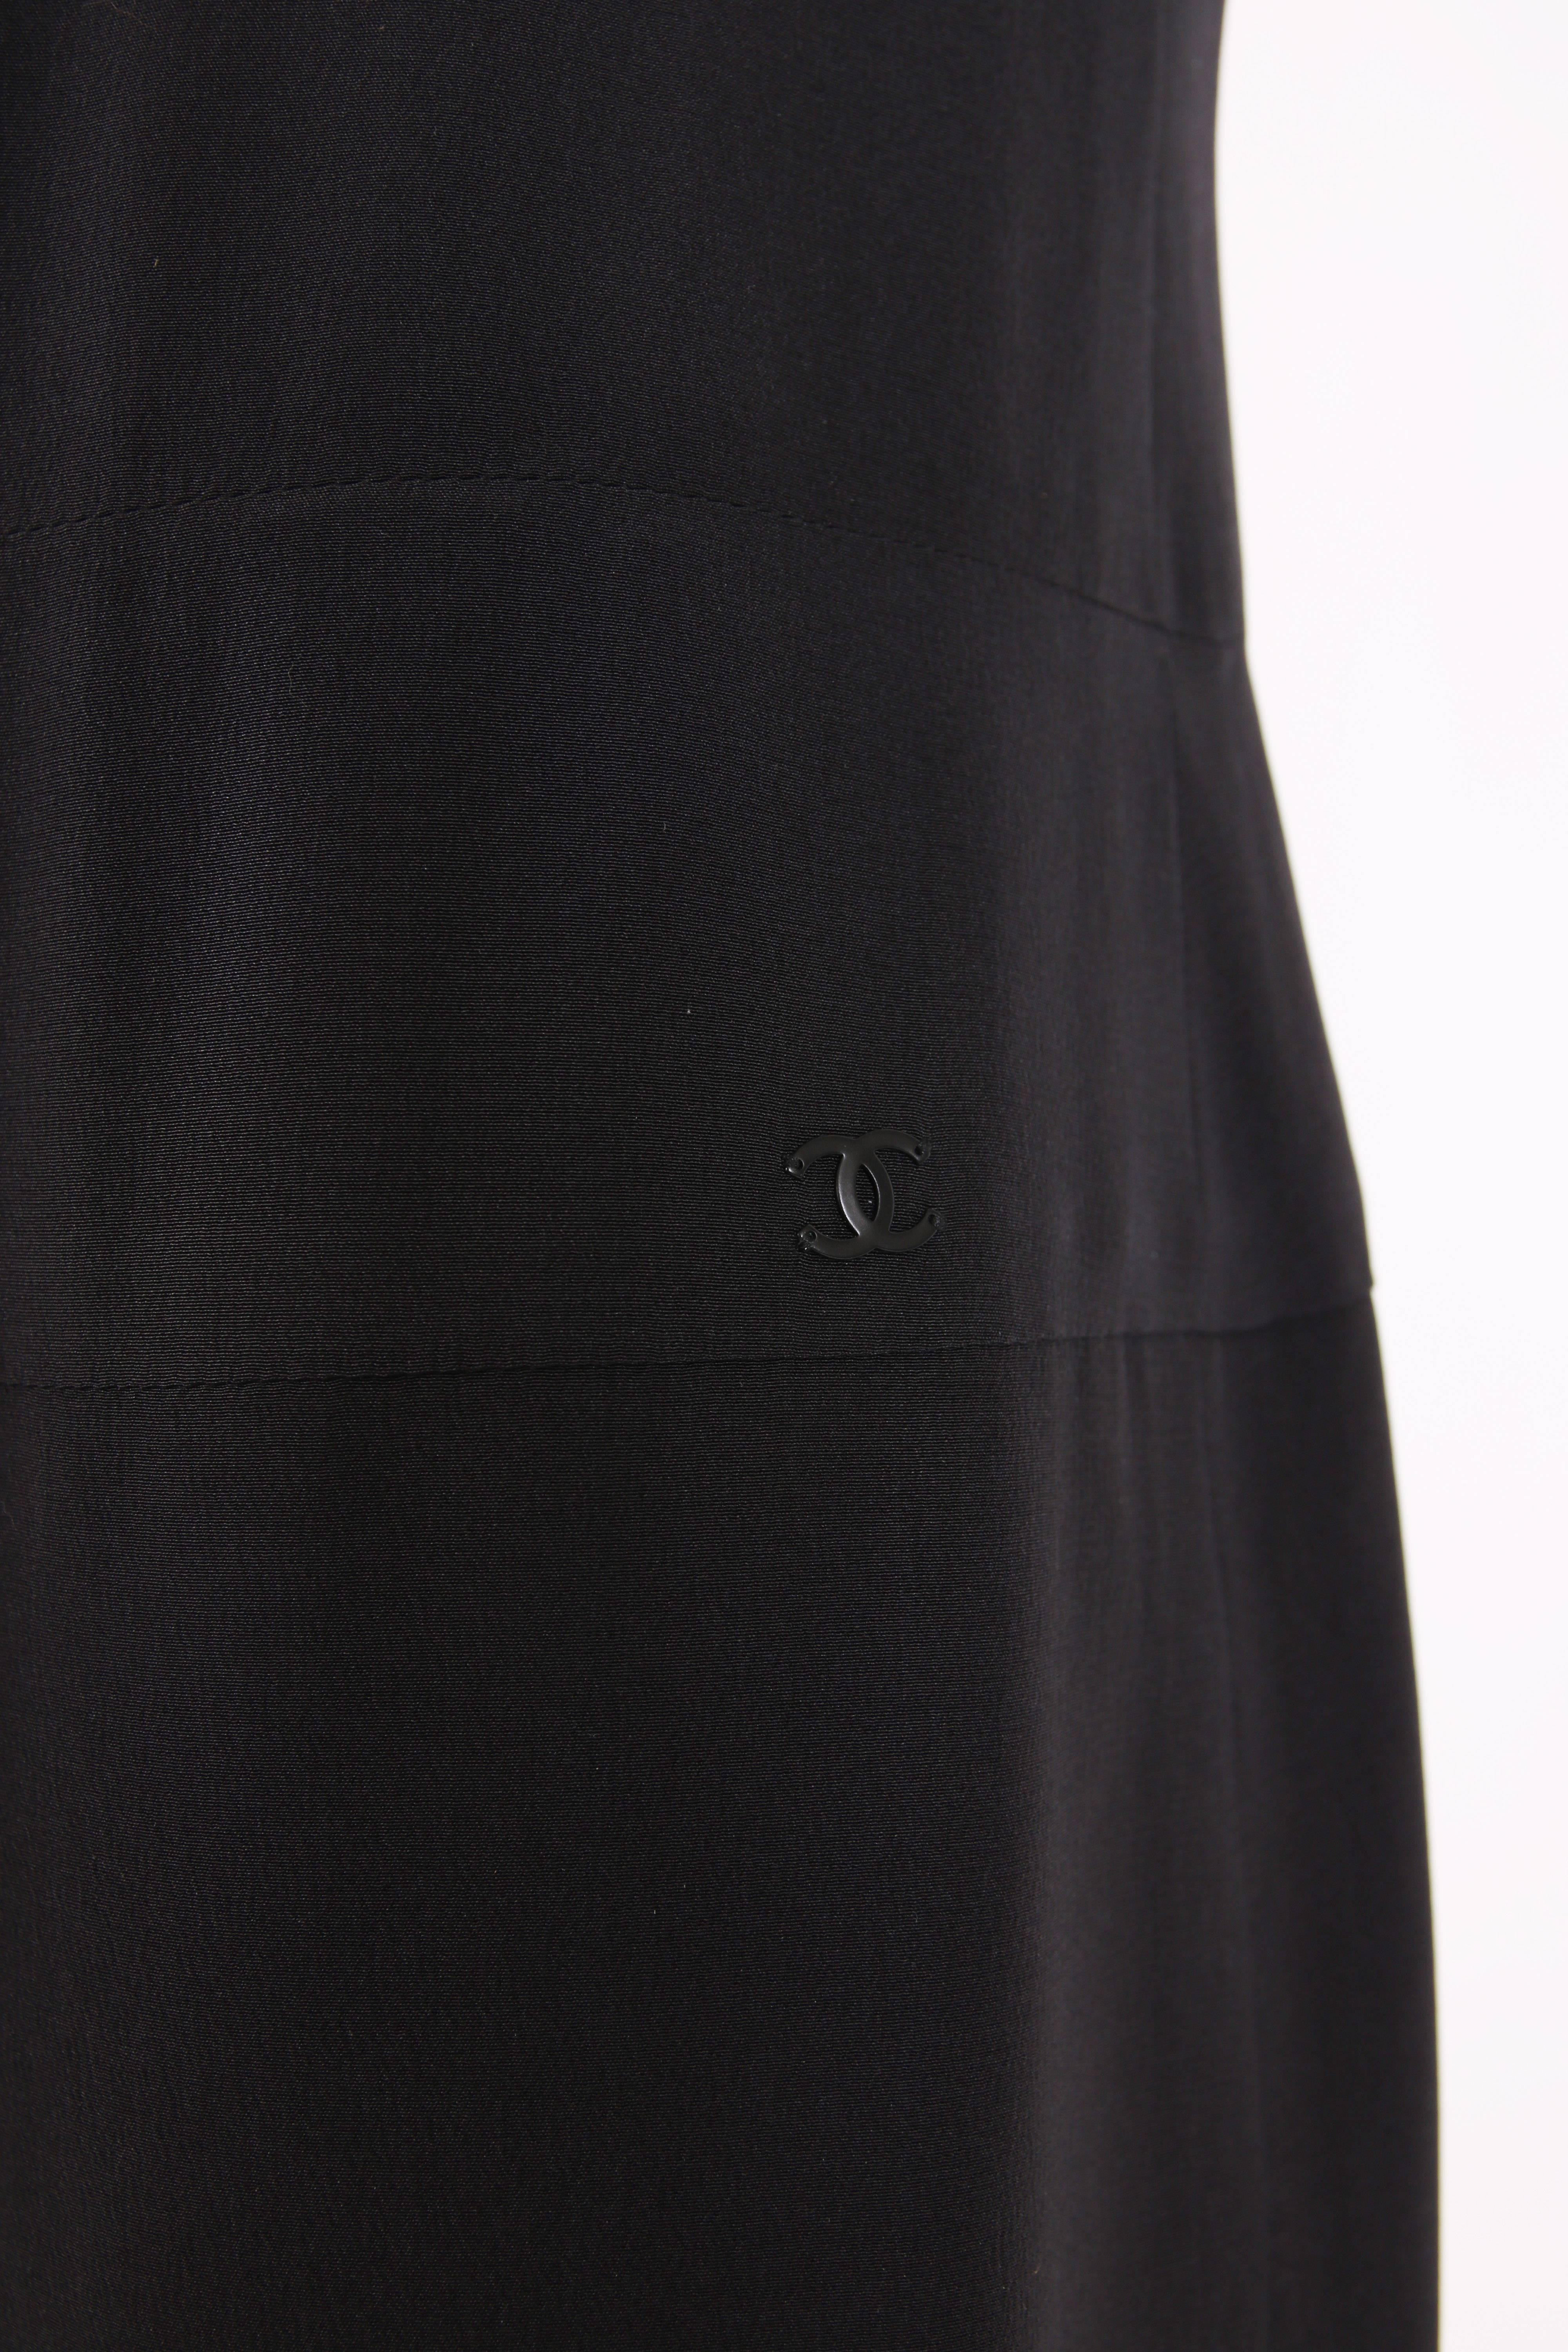 2001 Chanel Black Silk Cocktail Dress w/Lesage Beading, Lace & Appliques 3